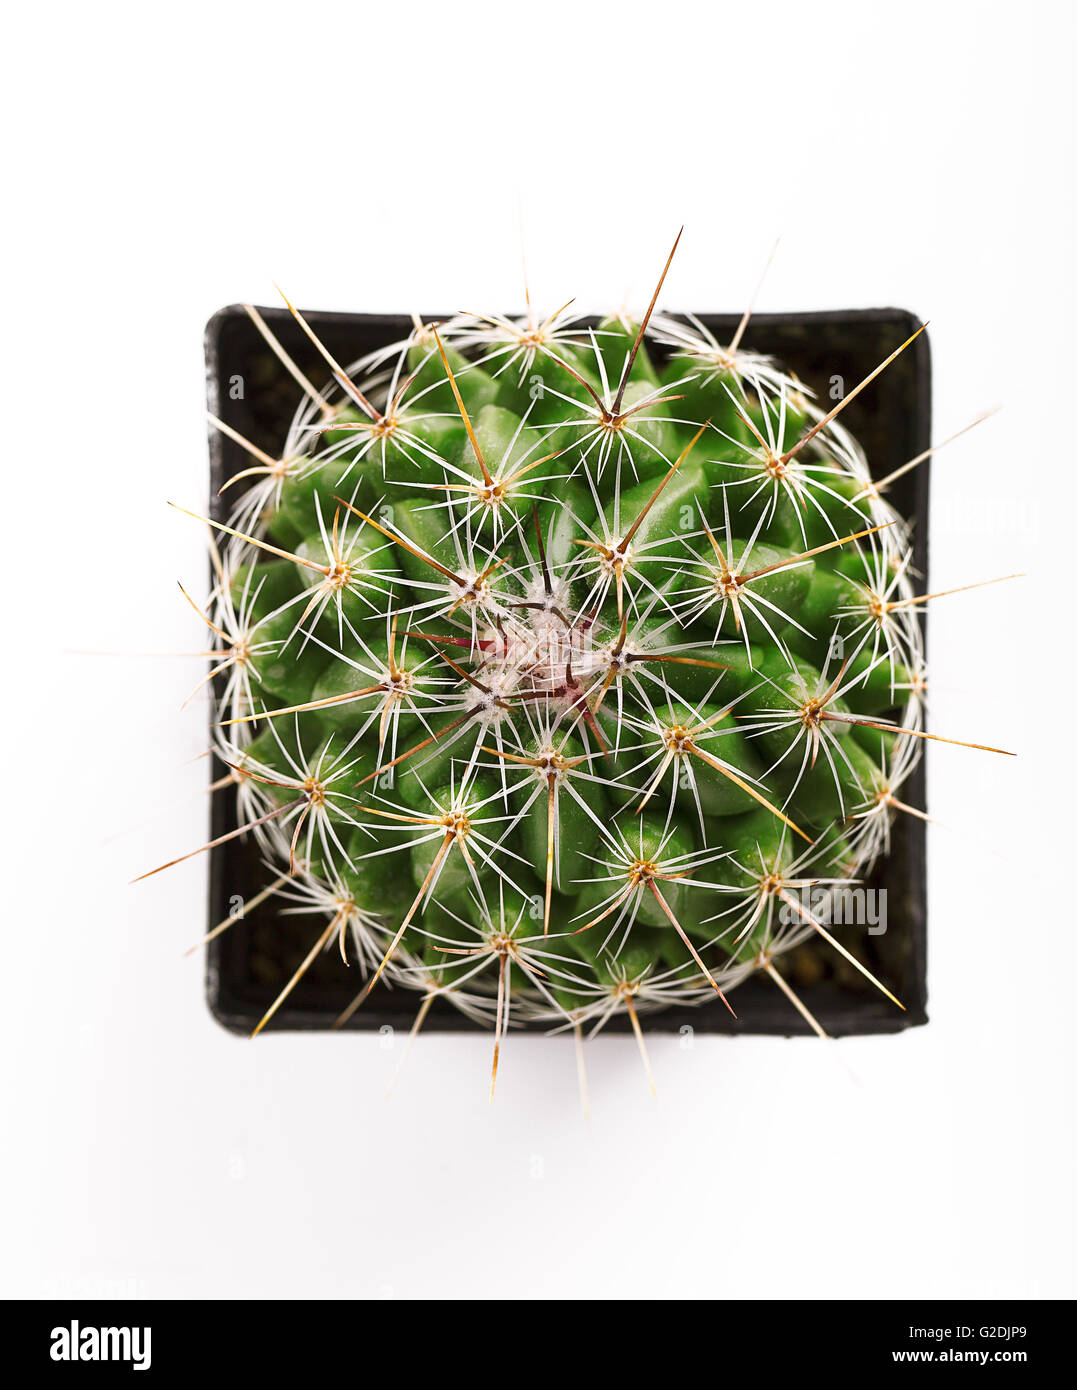 Vue de dessus d'un cactus épineux vert circulaire dans un cache-pot noir carré isolated on white Banque D'Images